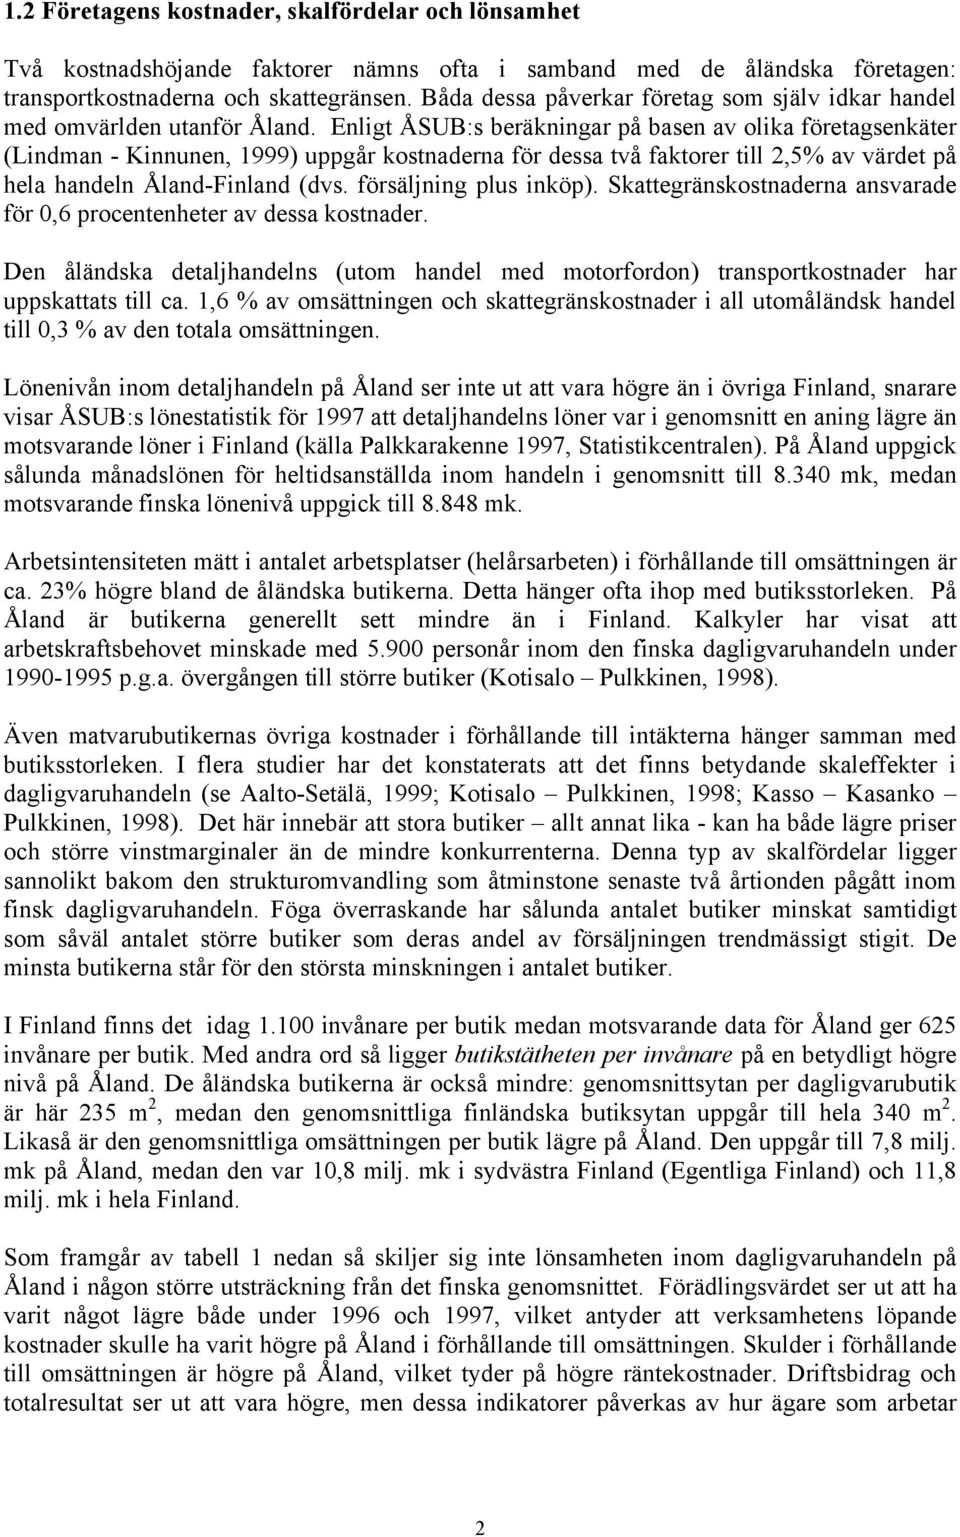 Enlgt ÅSUB:s beräknngar på basen av olka företagsenkäter (Lndman - Knnunen, 1999) uppgår kostnaderna för dessa två faktorer tll 2,5% av värdet på hela handeln Åland-Fnland (dvs. försäljnng plus nköp).